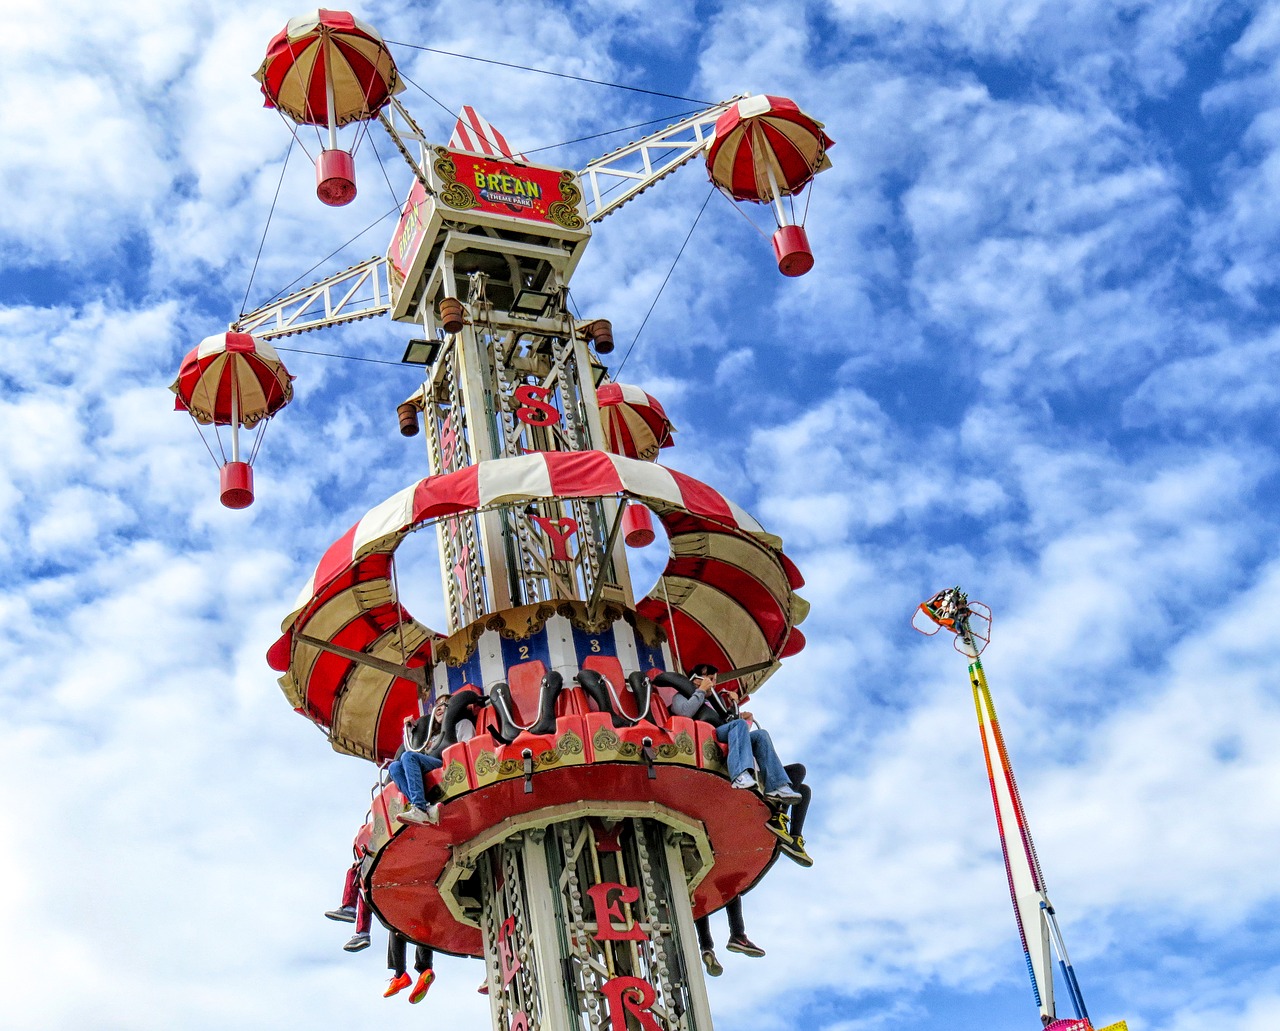 Download free photo of Funfair, brean, brean leisure park, fun fair